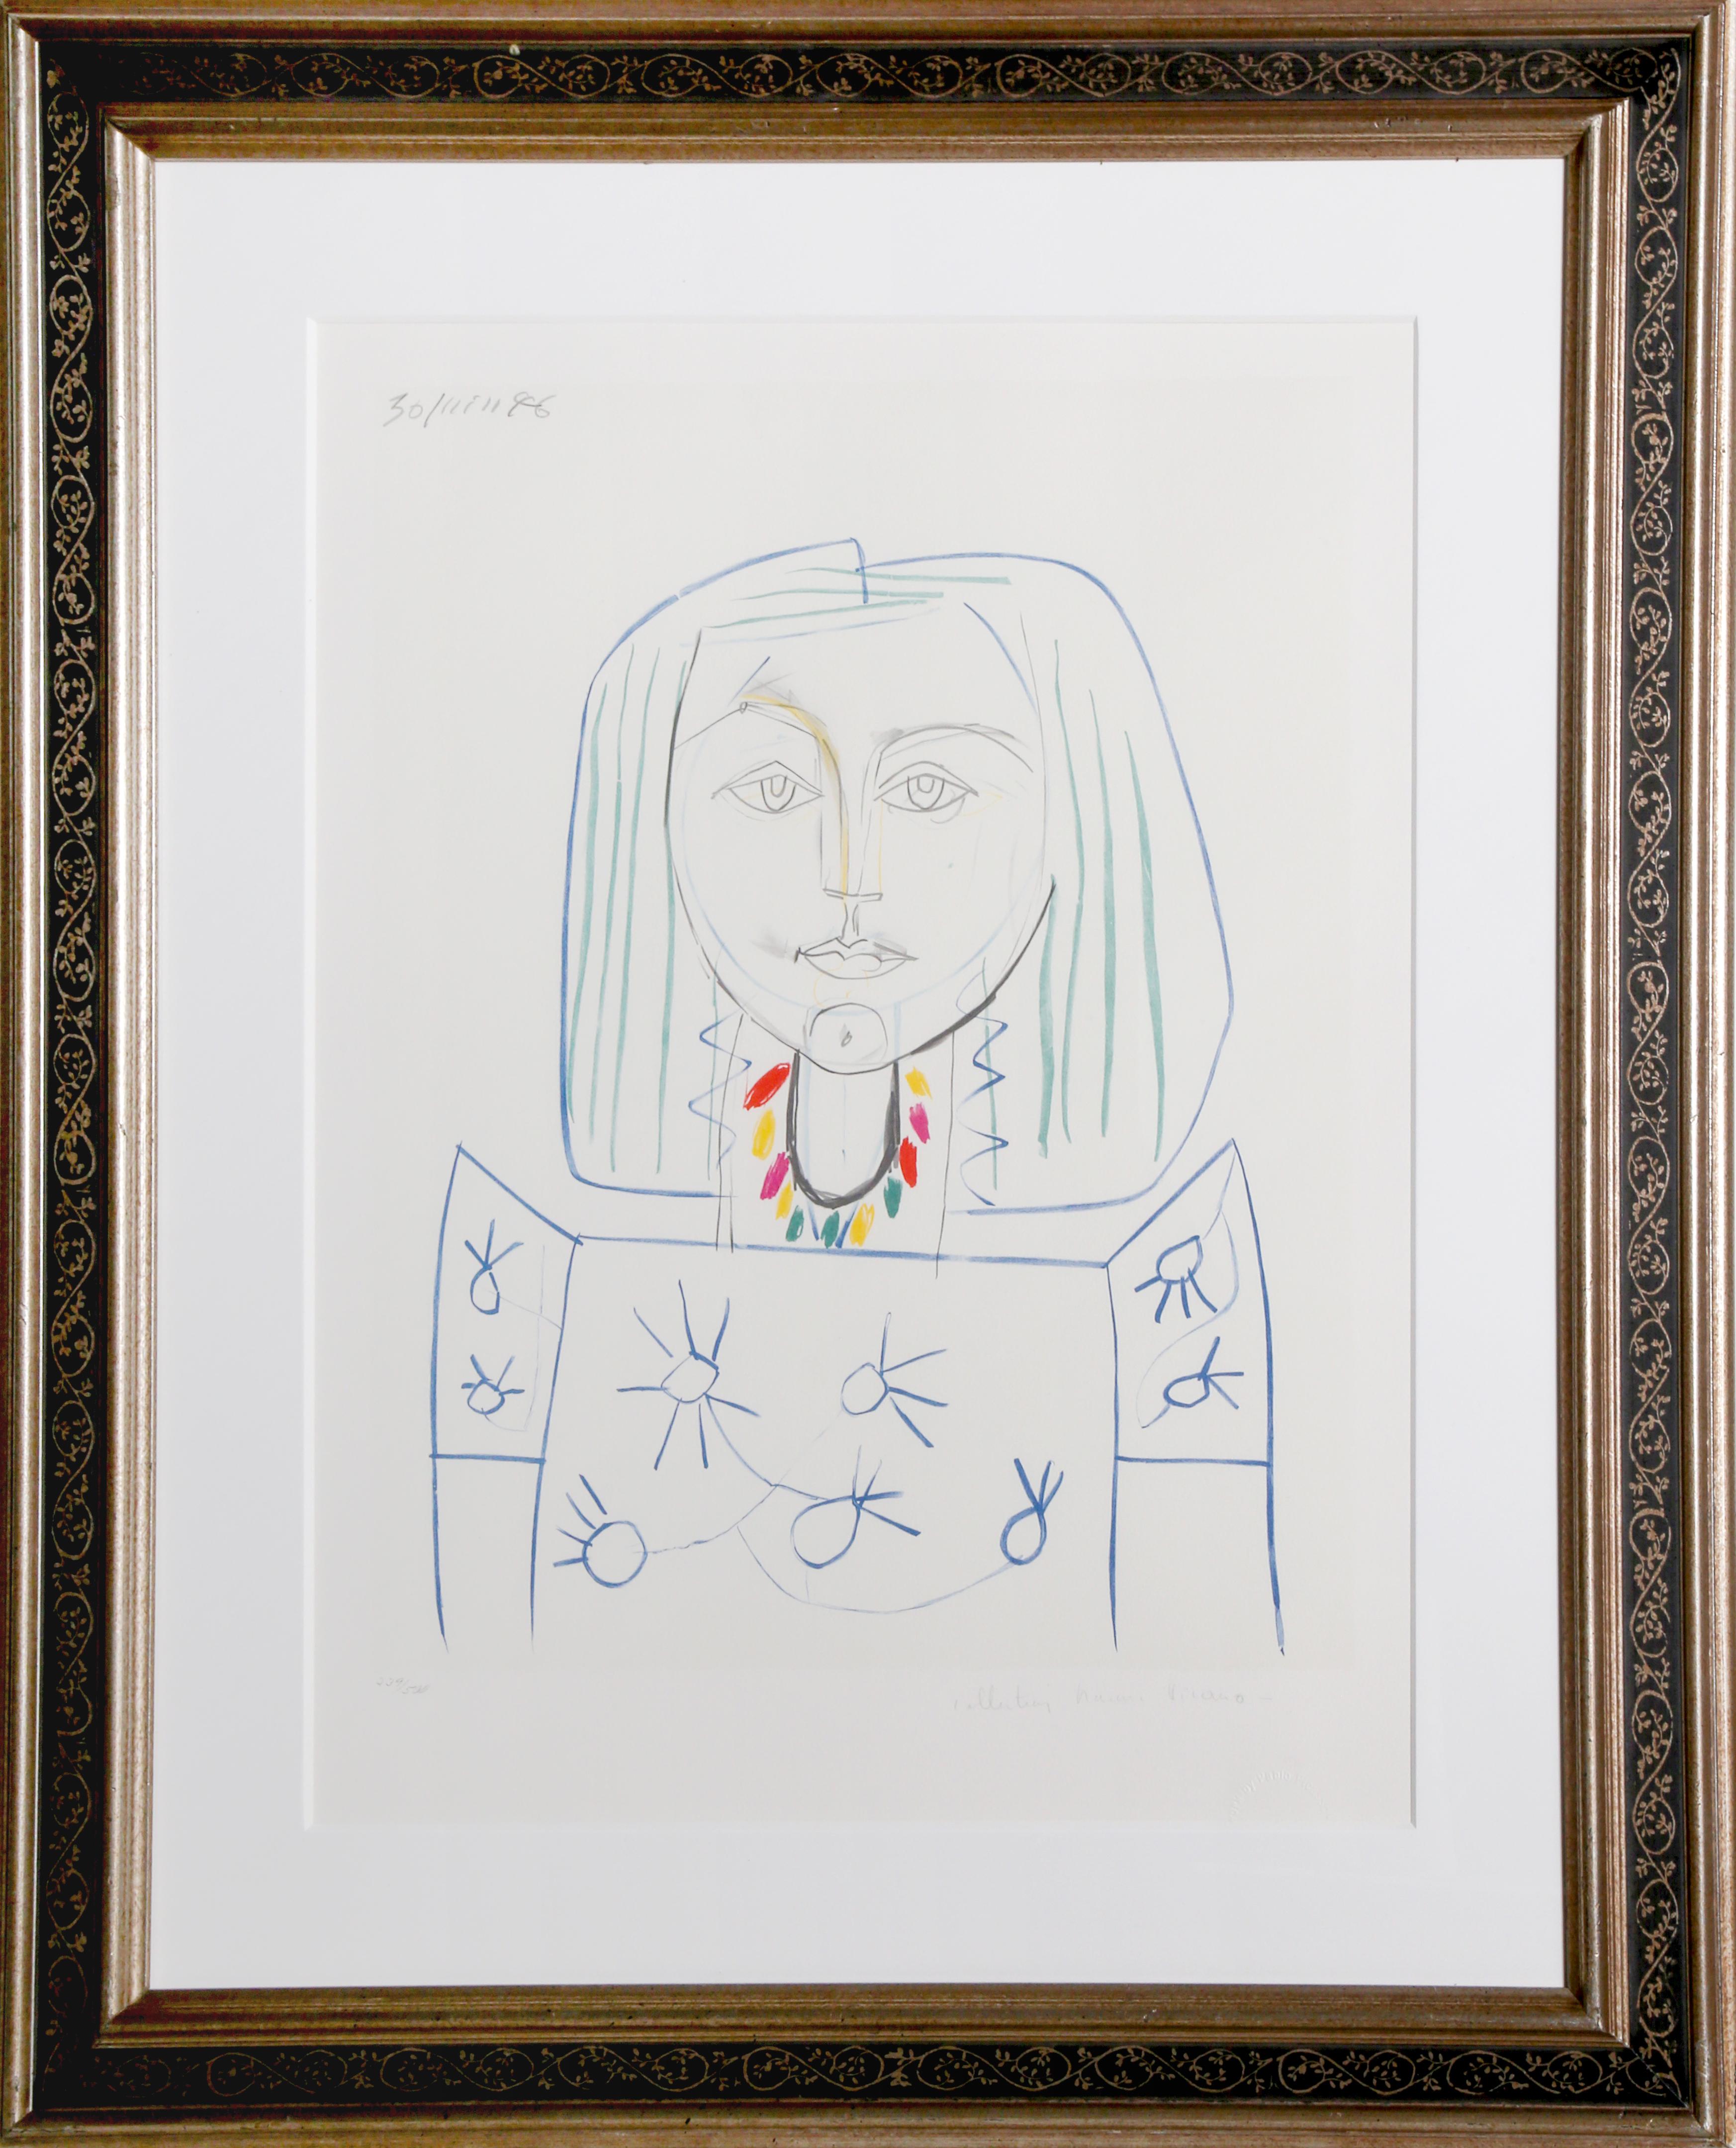 Eine Lithographie aus der Nachlasssammlung Marina Picasso nach dem Gemälde "Nature Morte a la Porte et a la Clef" von Pablo Picasso.  Das Originalgemälde wurde 1946 fertiggestellt. In den 1970er Jahren, nach Picassos Tod, autorisierte Marina